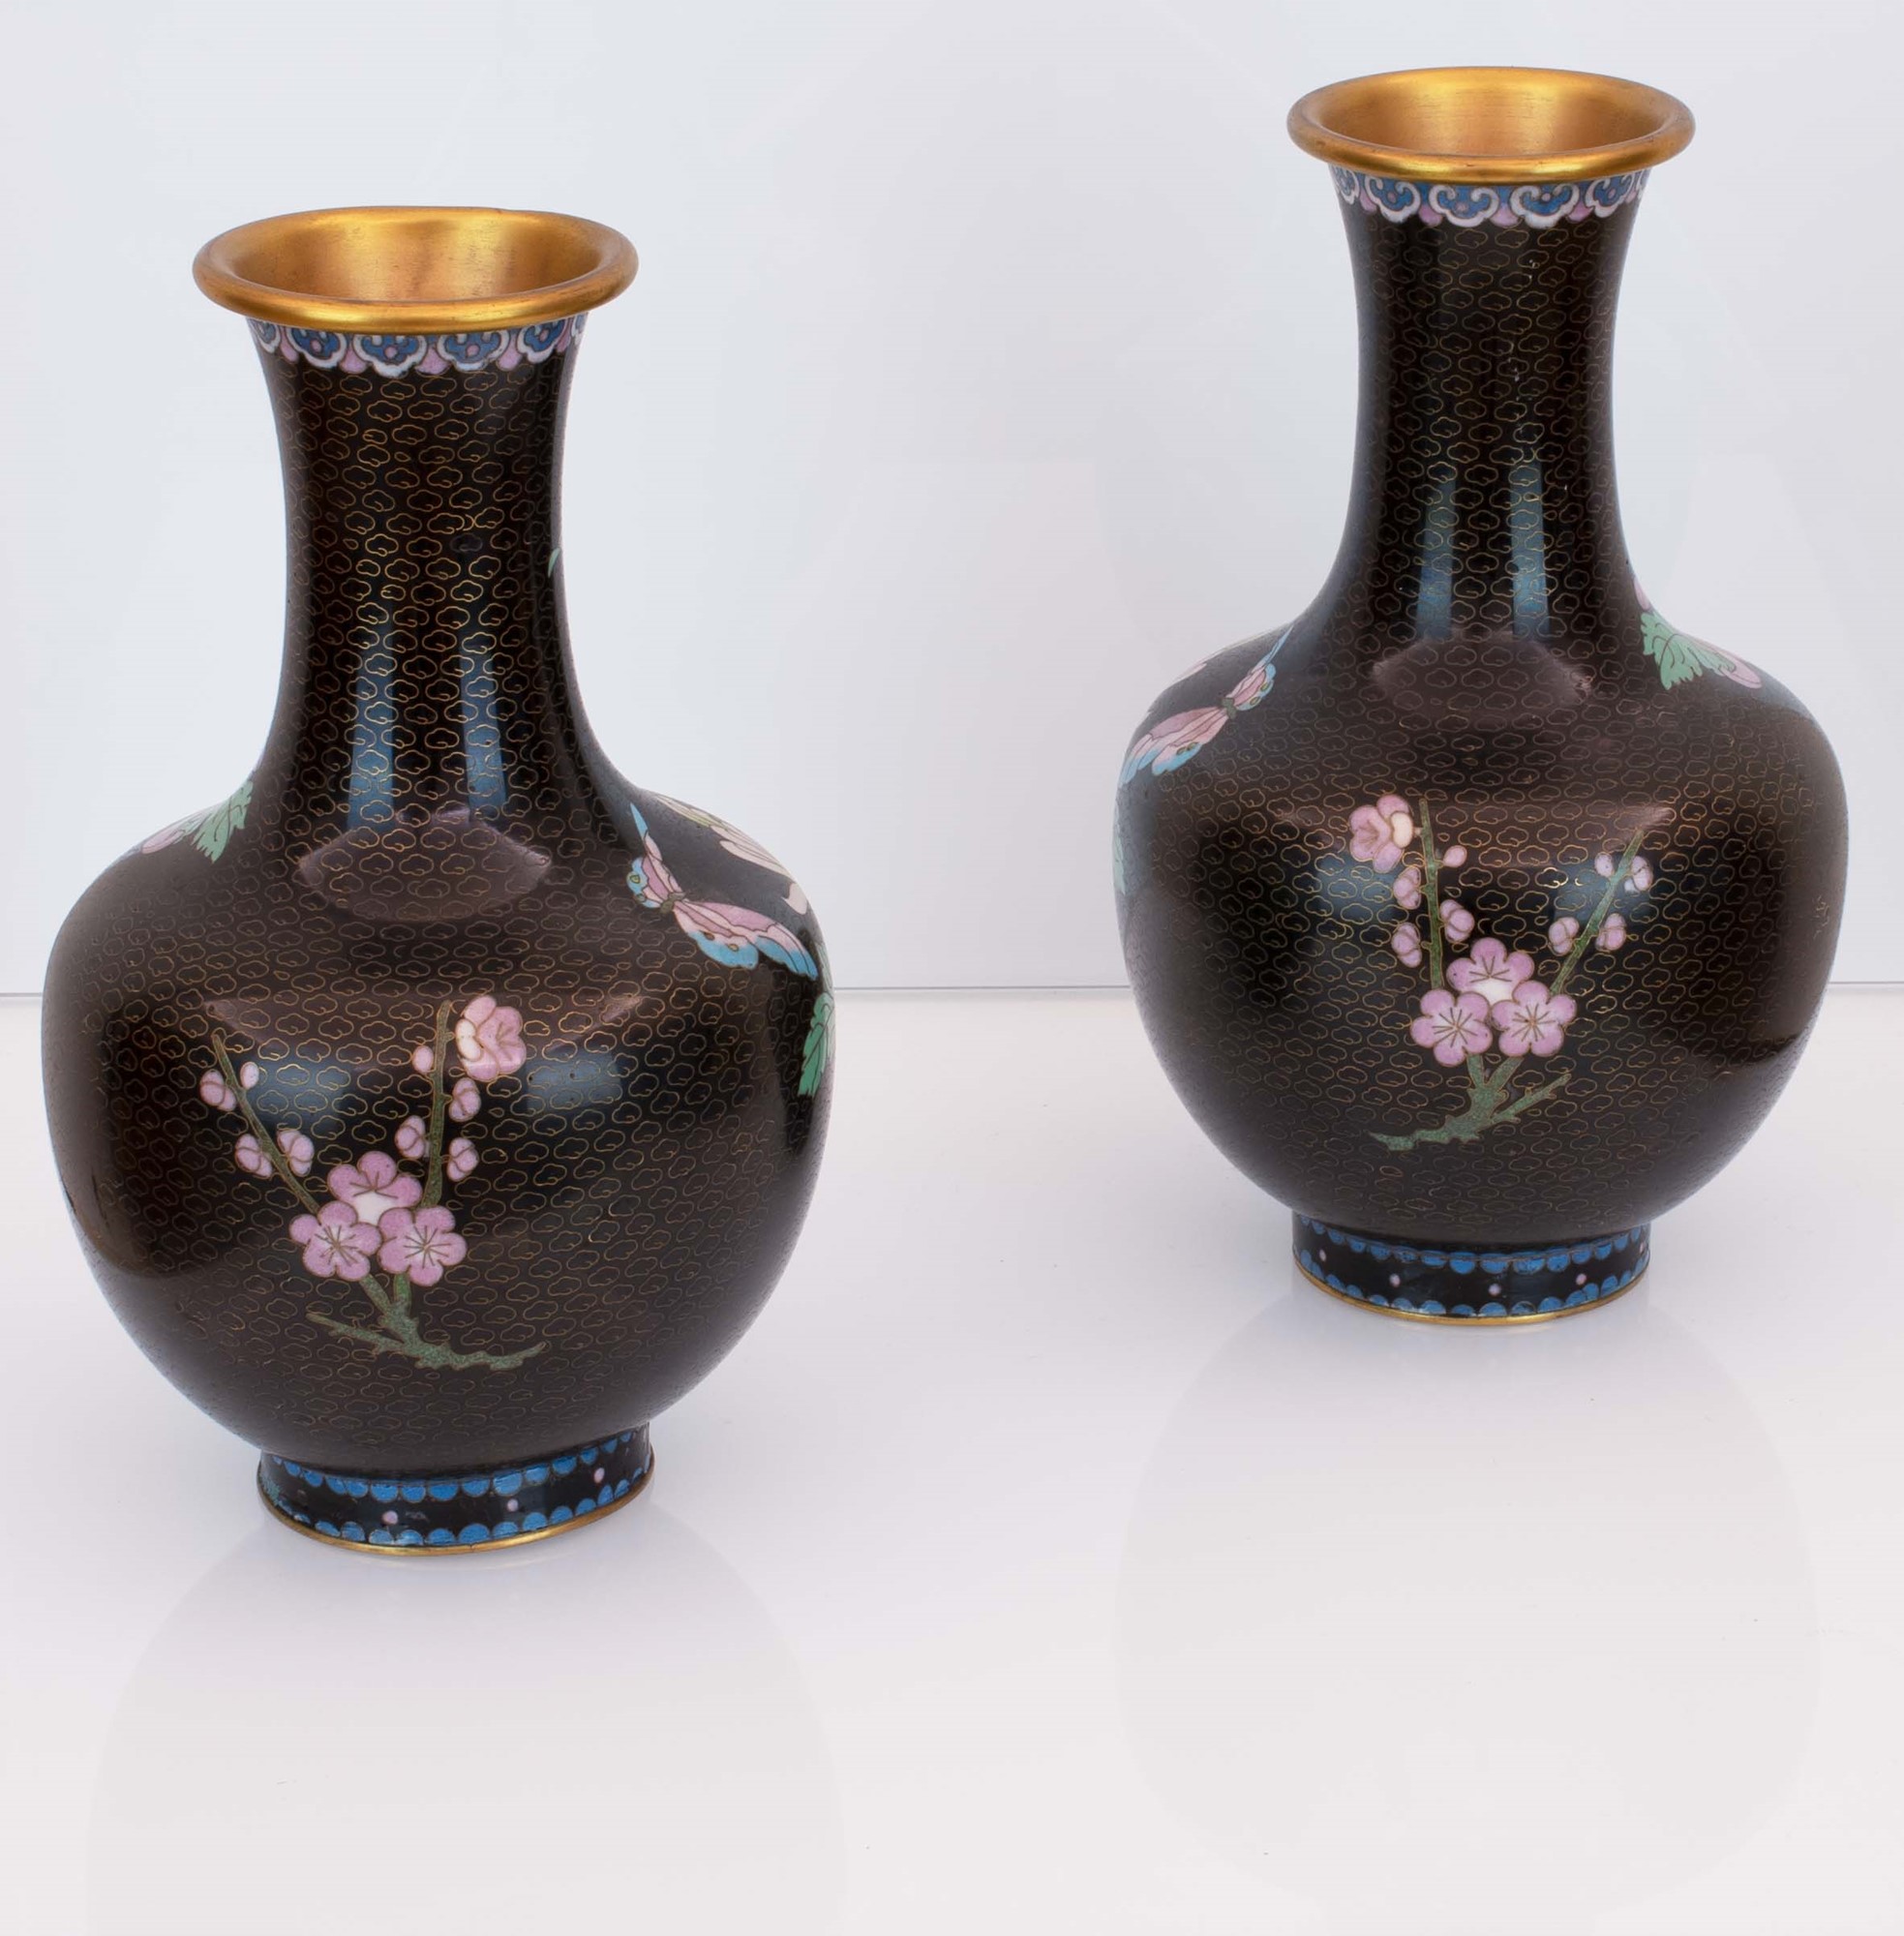 Coppia di vasi cloisonnet neri con decori floreali. Basi in legno ebanizzato. - Image 4 of 4